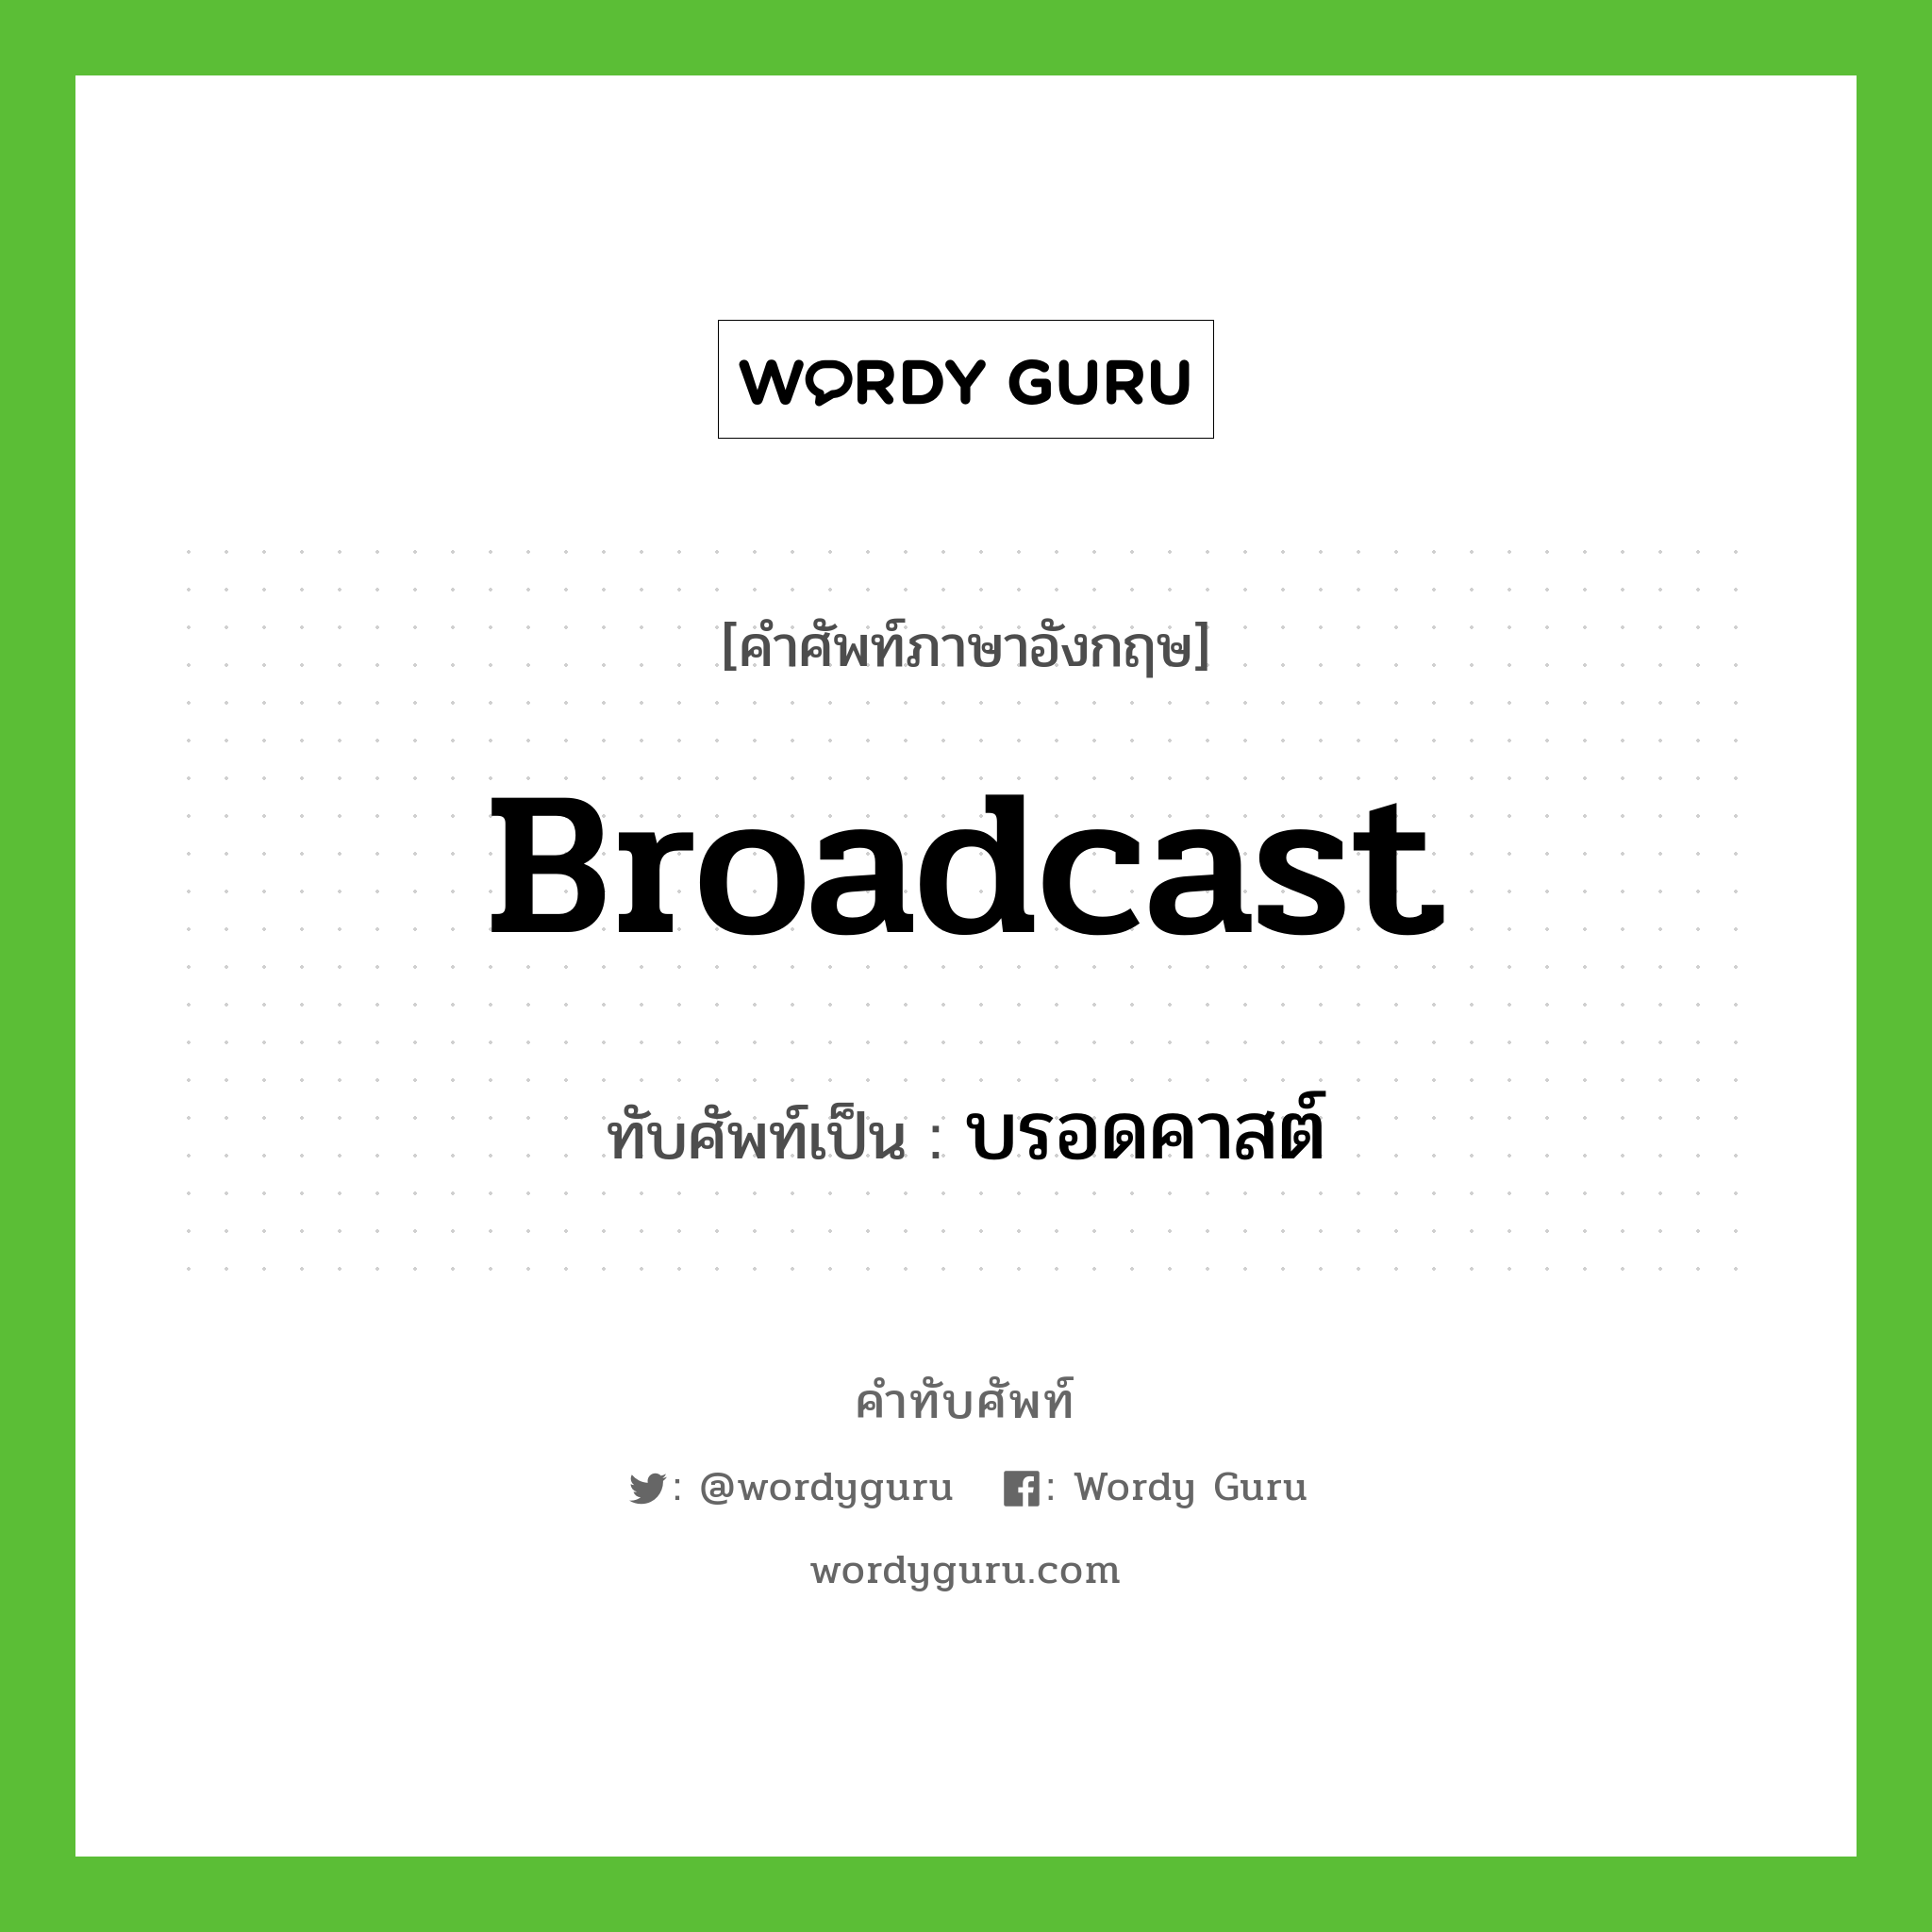 broadcast เขียนเป็นคำไทยว่าอะไร?, คำศัพท์ภาษาอังกฤษ broadcast ทับศัพท์เป็น บรอดคาสต์